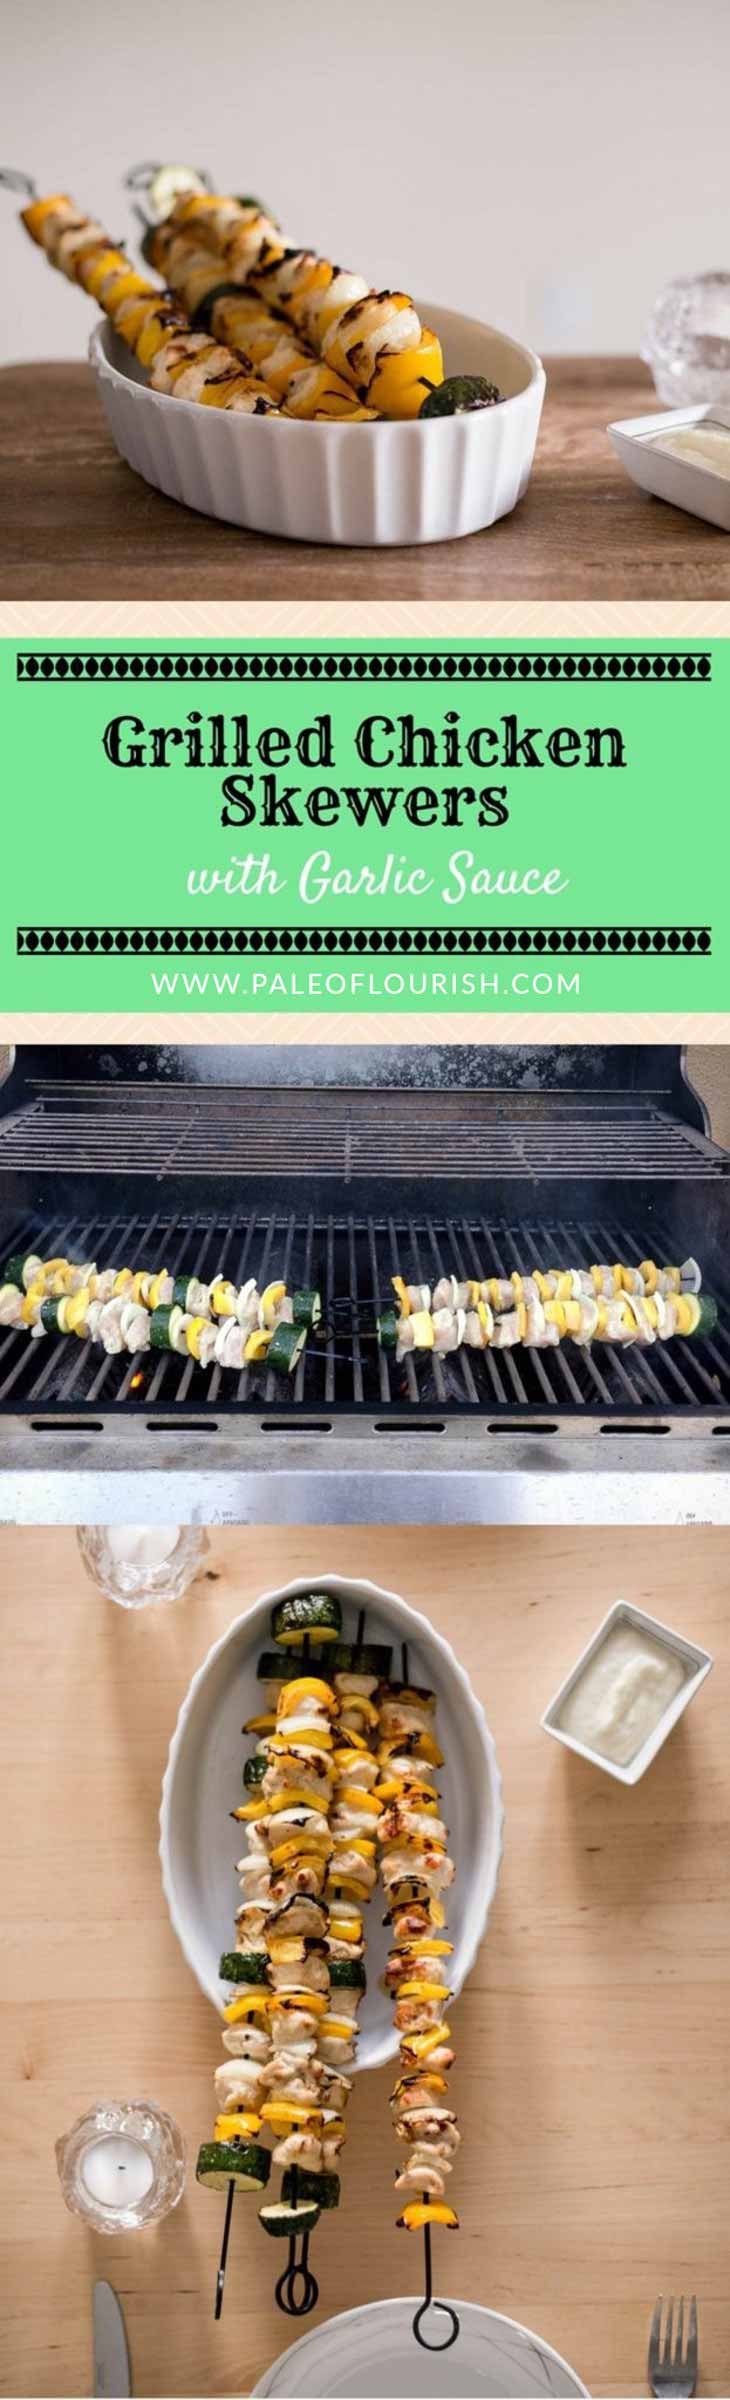 Grilled Chicken Skewers with Garlic Sauce #paleo #recipes #glutenfree https://paleoflourish.com/grilled-chicken-skewers-with-garlic-sauce